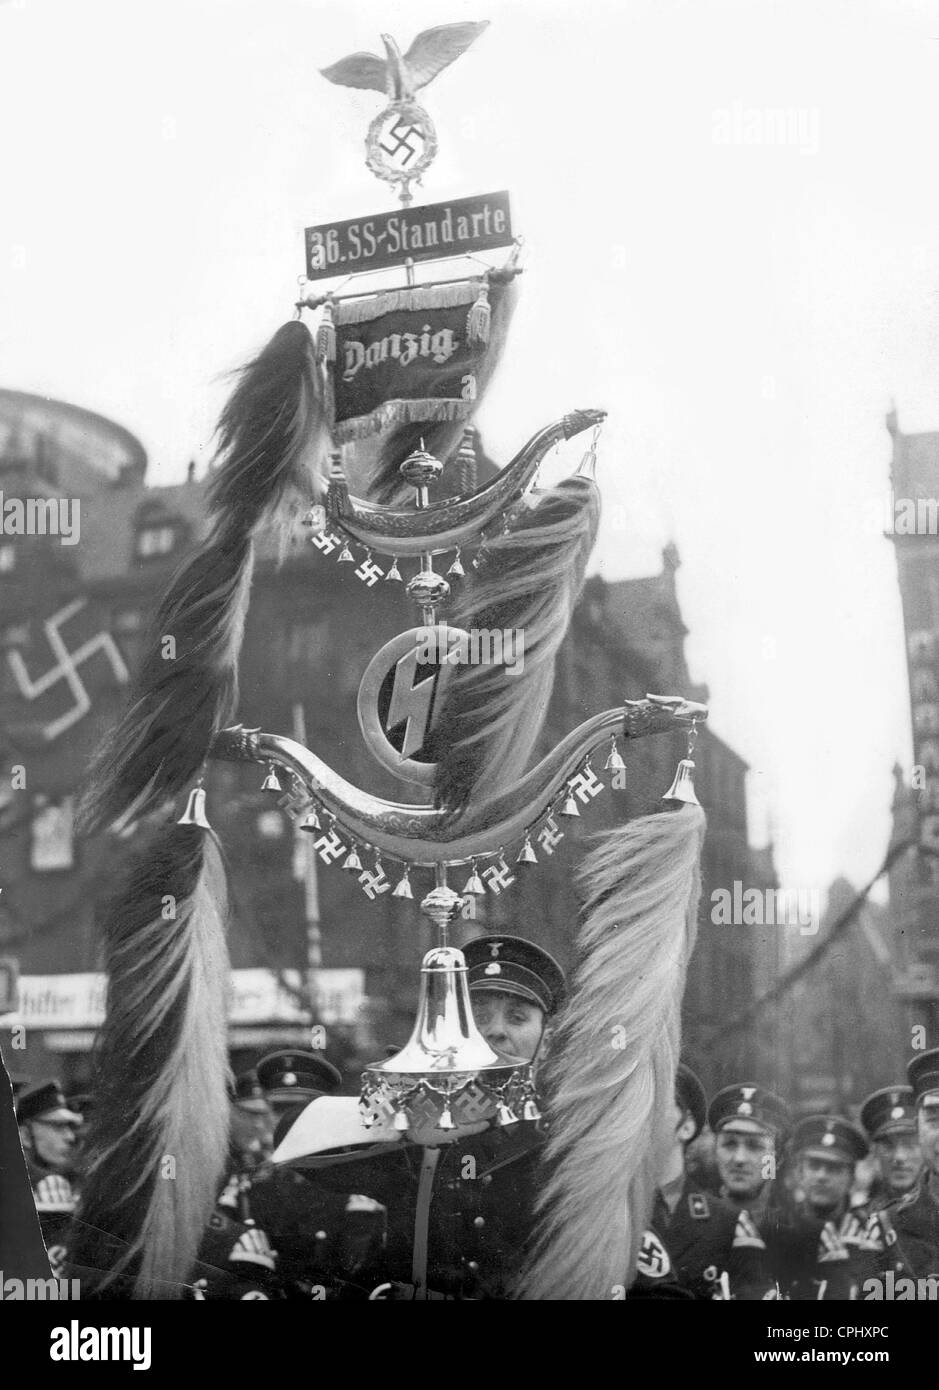 Marschierendes Band des 36.SS-Standard "Danzig", 1939 Stockfoto